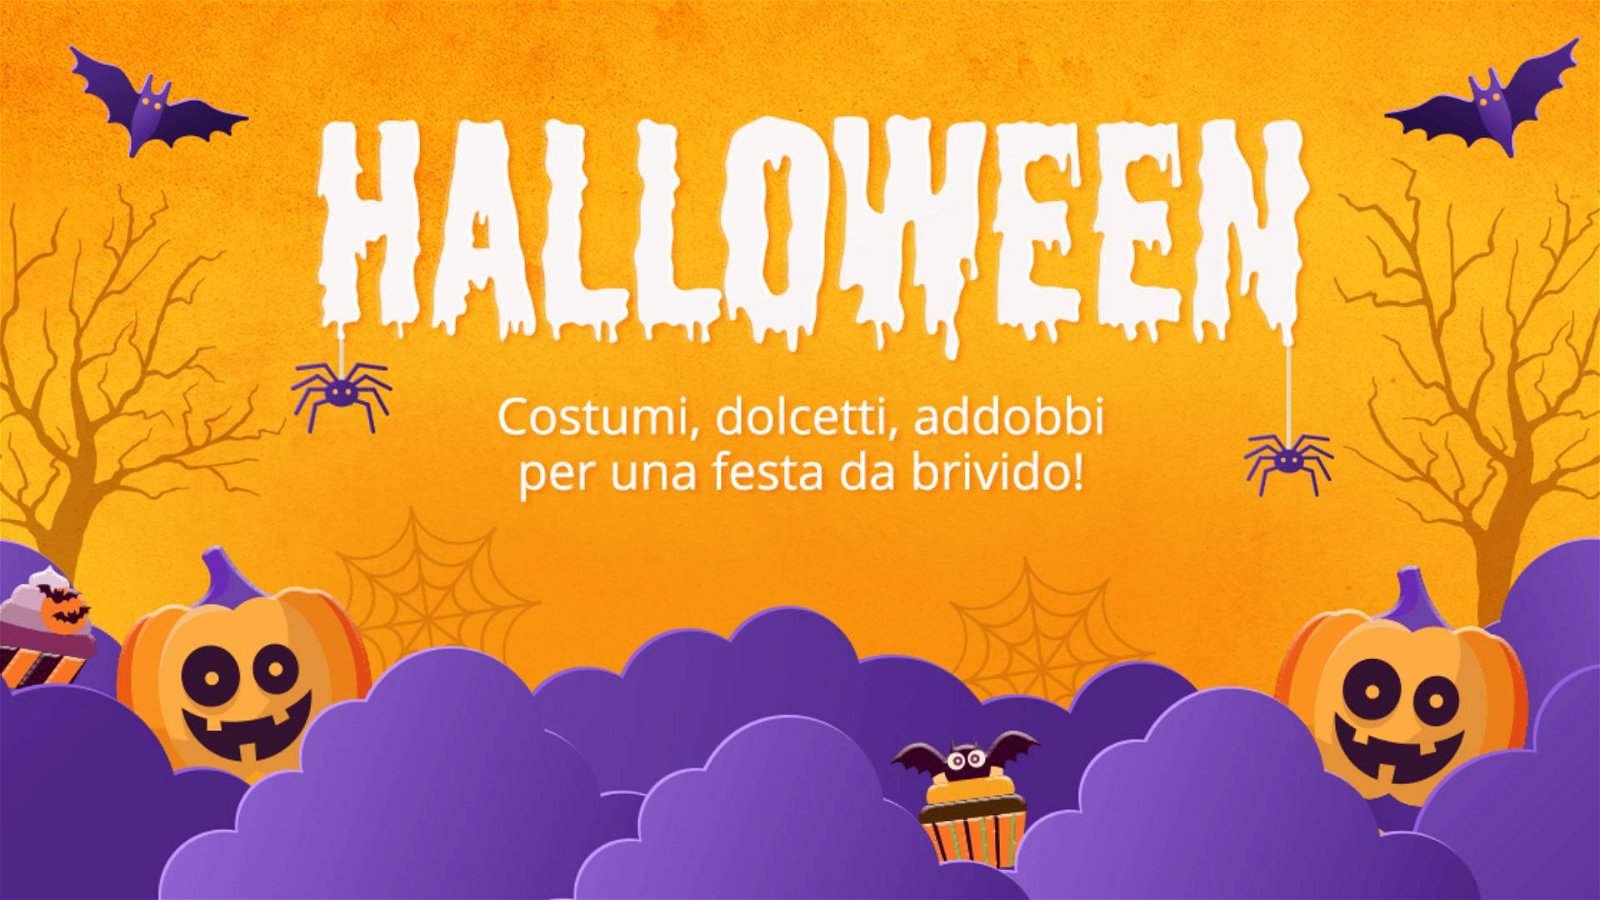 Immagine di Halloween con IBS, offerte su costumi, giochi, scherzi, decorazioni, libri e film